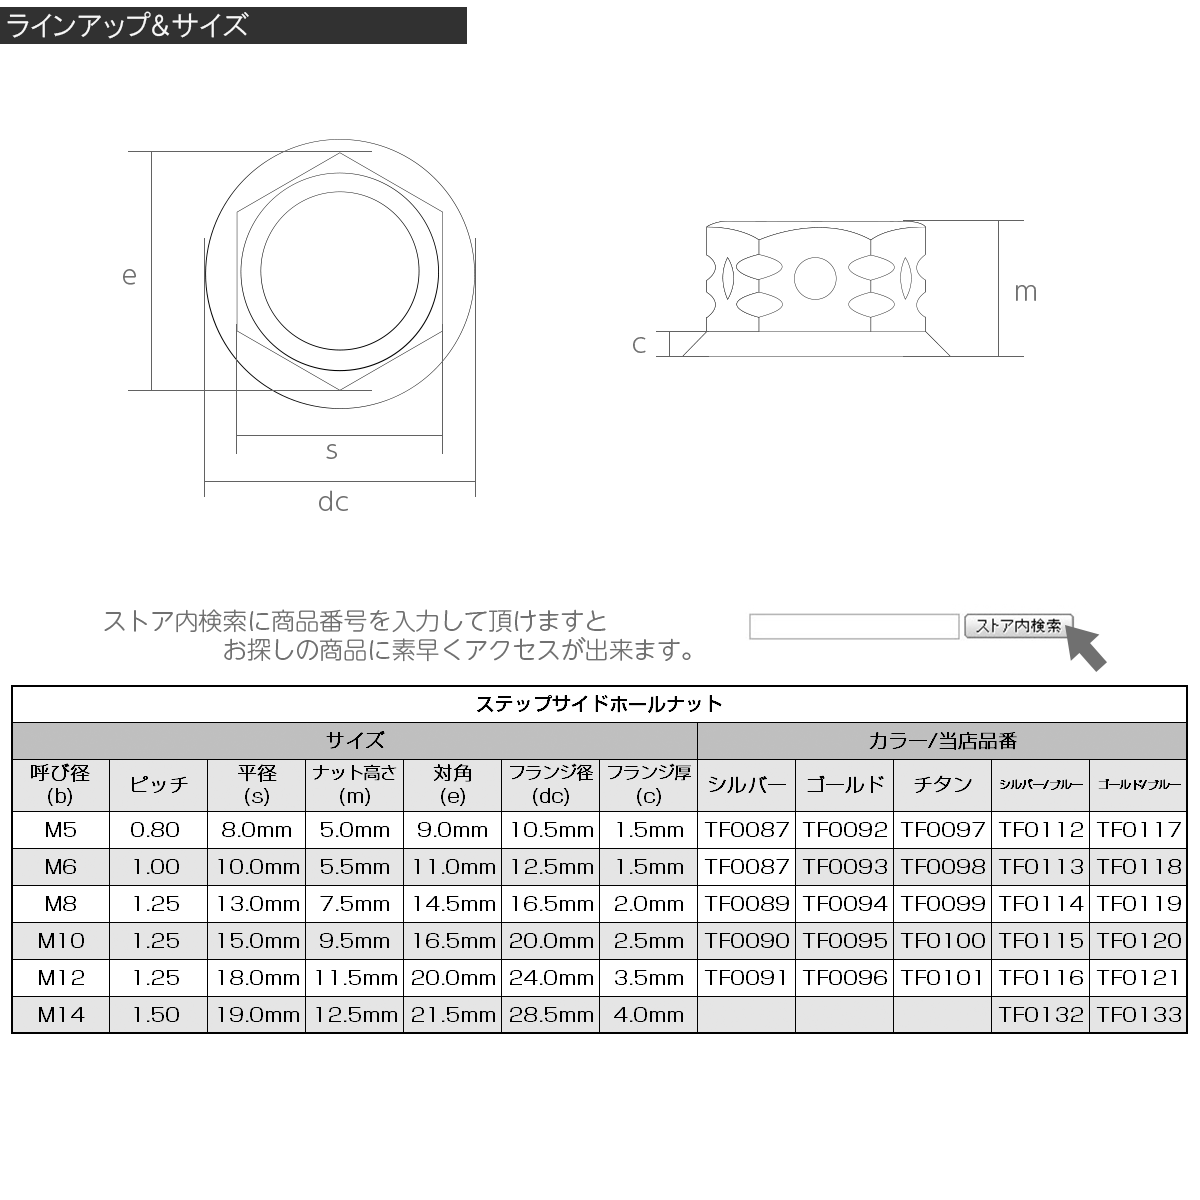 SUSステンレス M10 P=1.25 ステップサイドホールナット フランジ付 六角ナット シルバー / 焼きチタンカラー TF0115_画像3